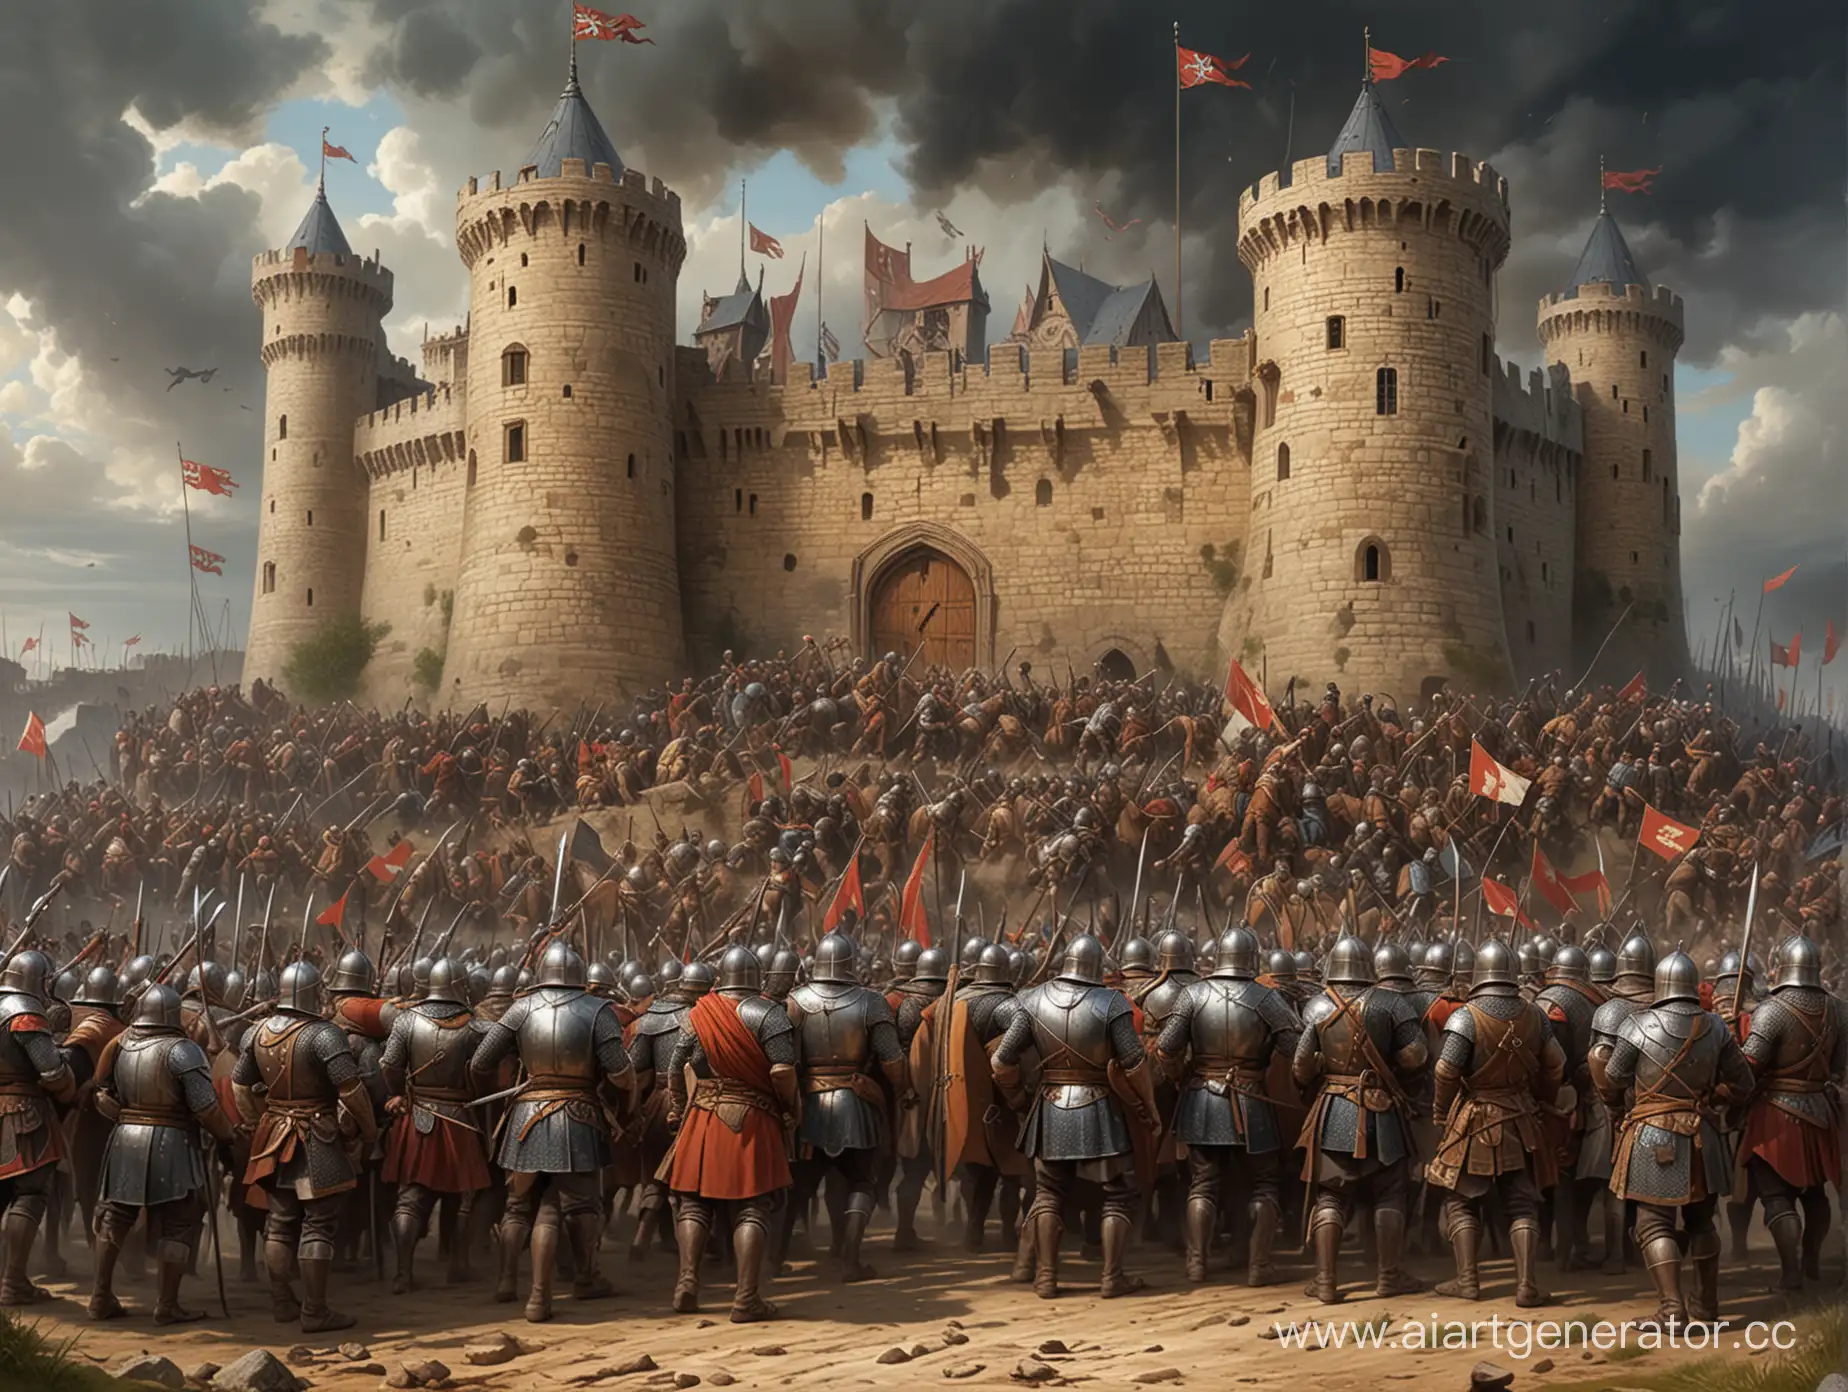 изобрази бой за крепость в стиле средневековья где фигурирует полководец с большим животом и все его бойцы также с большим животом